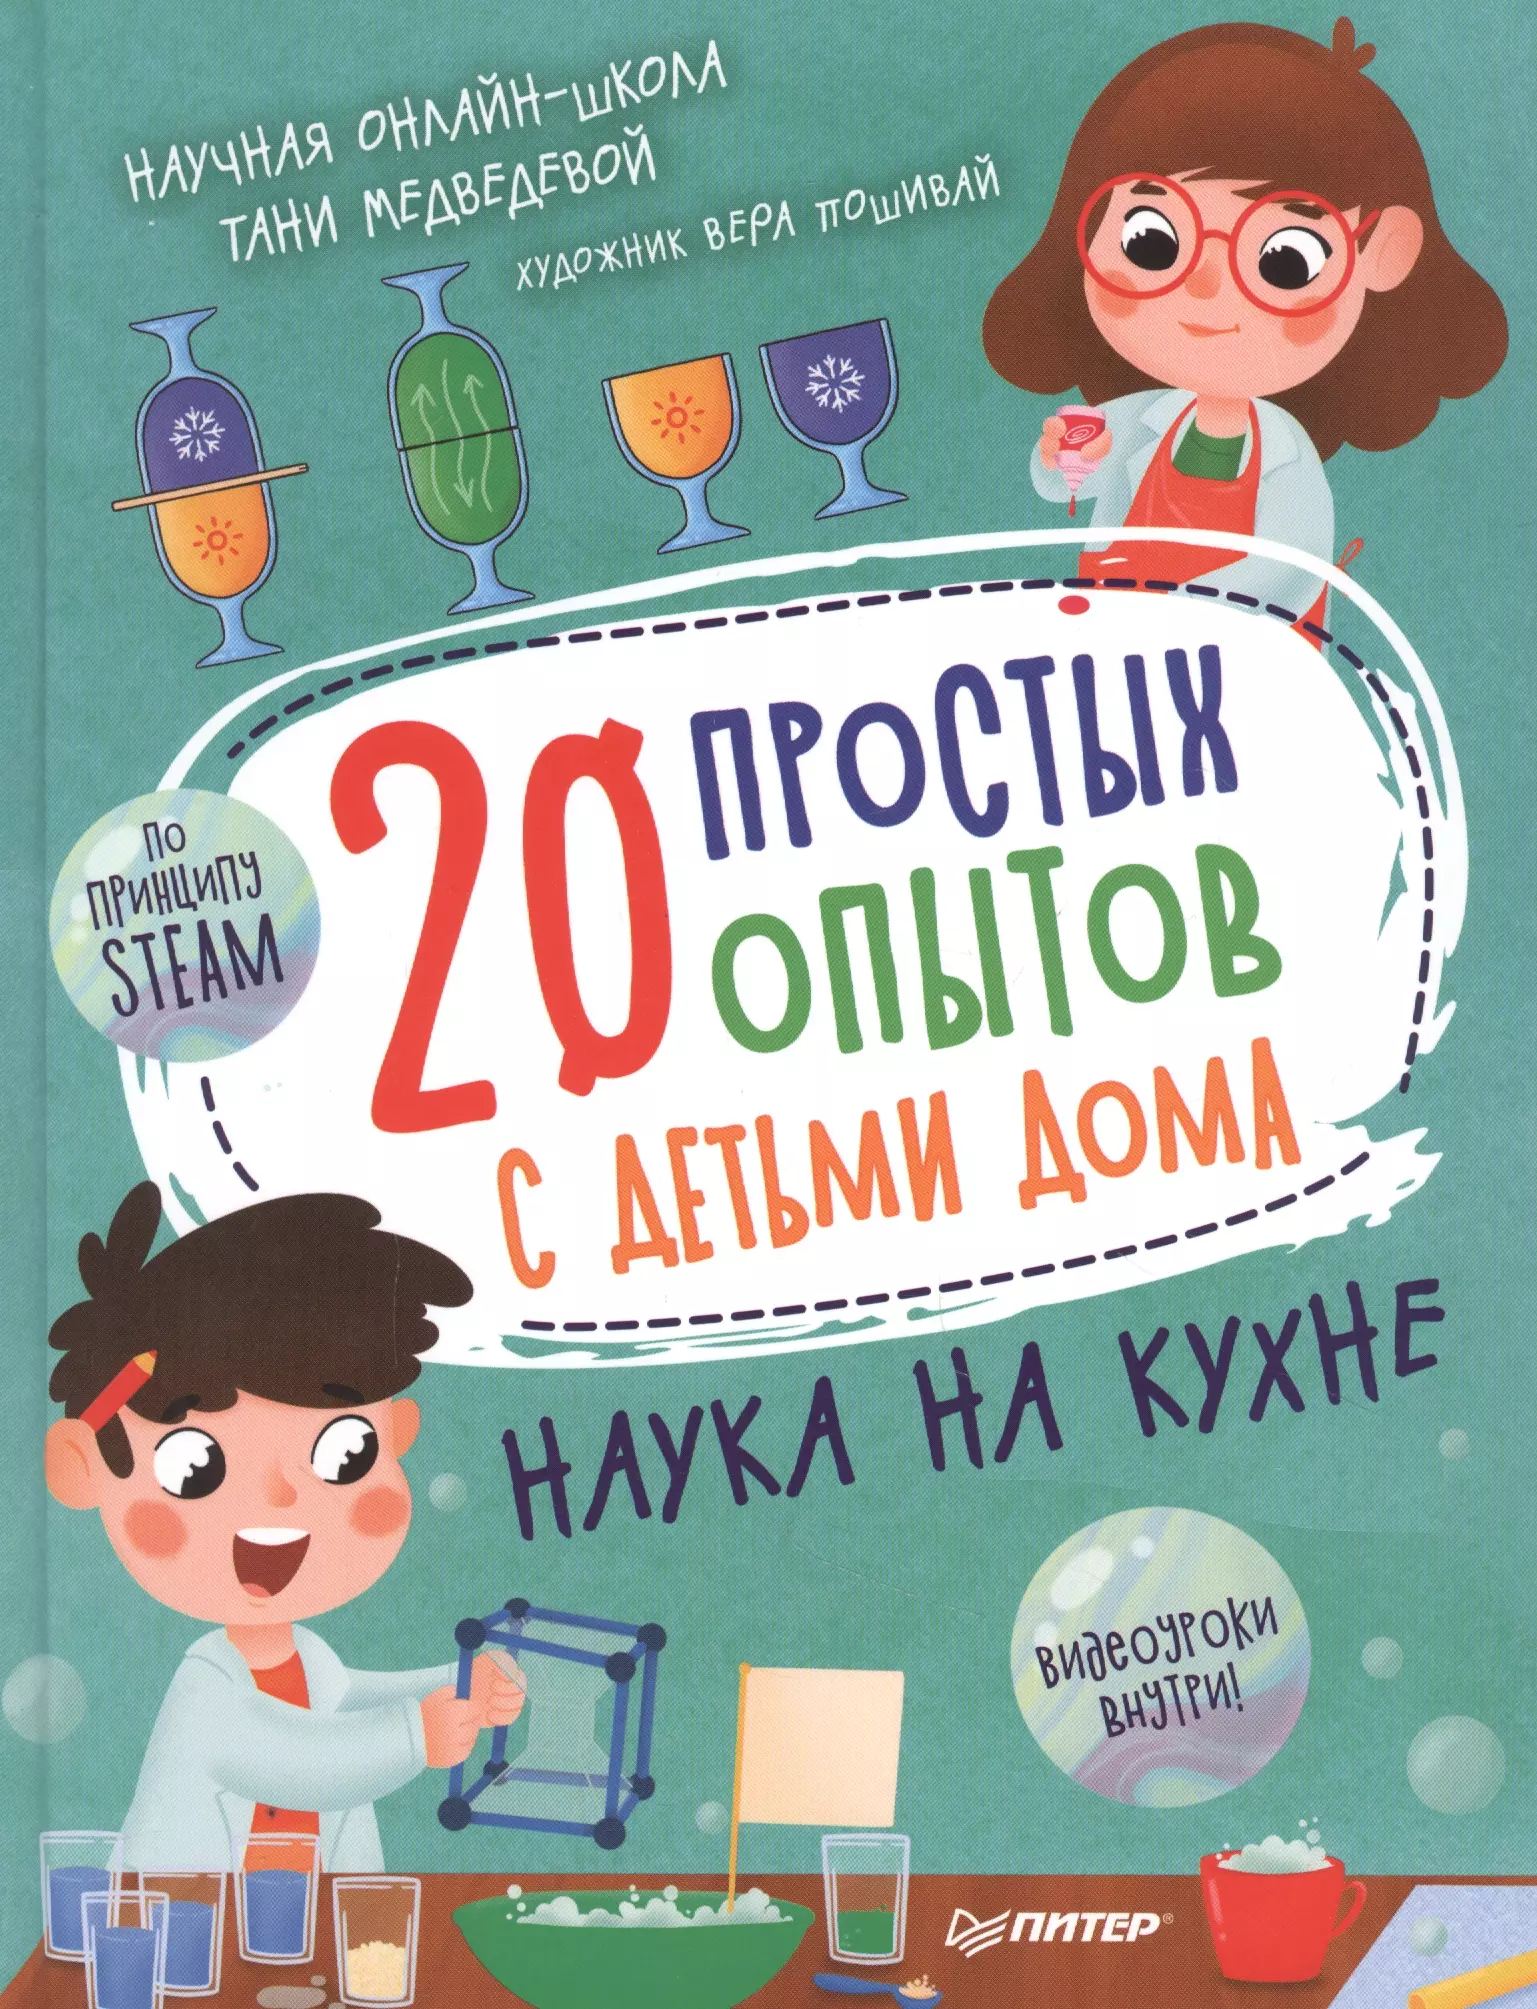 Медведева Таня - 20 простых опытов с детьми дома. Наука на кухне